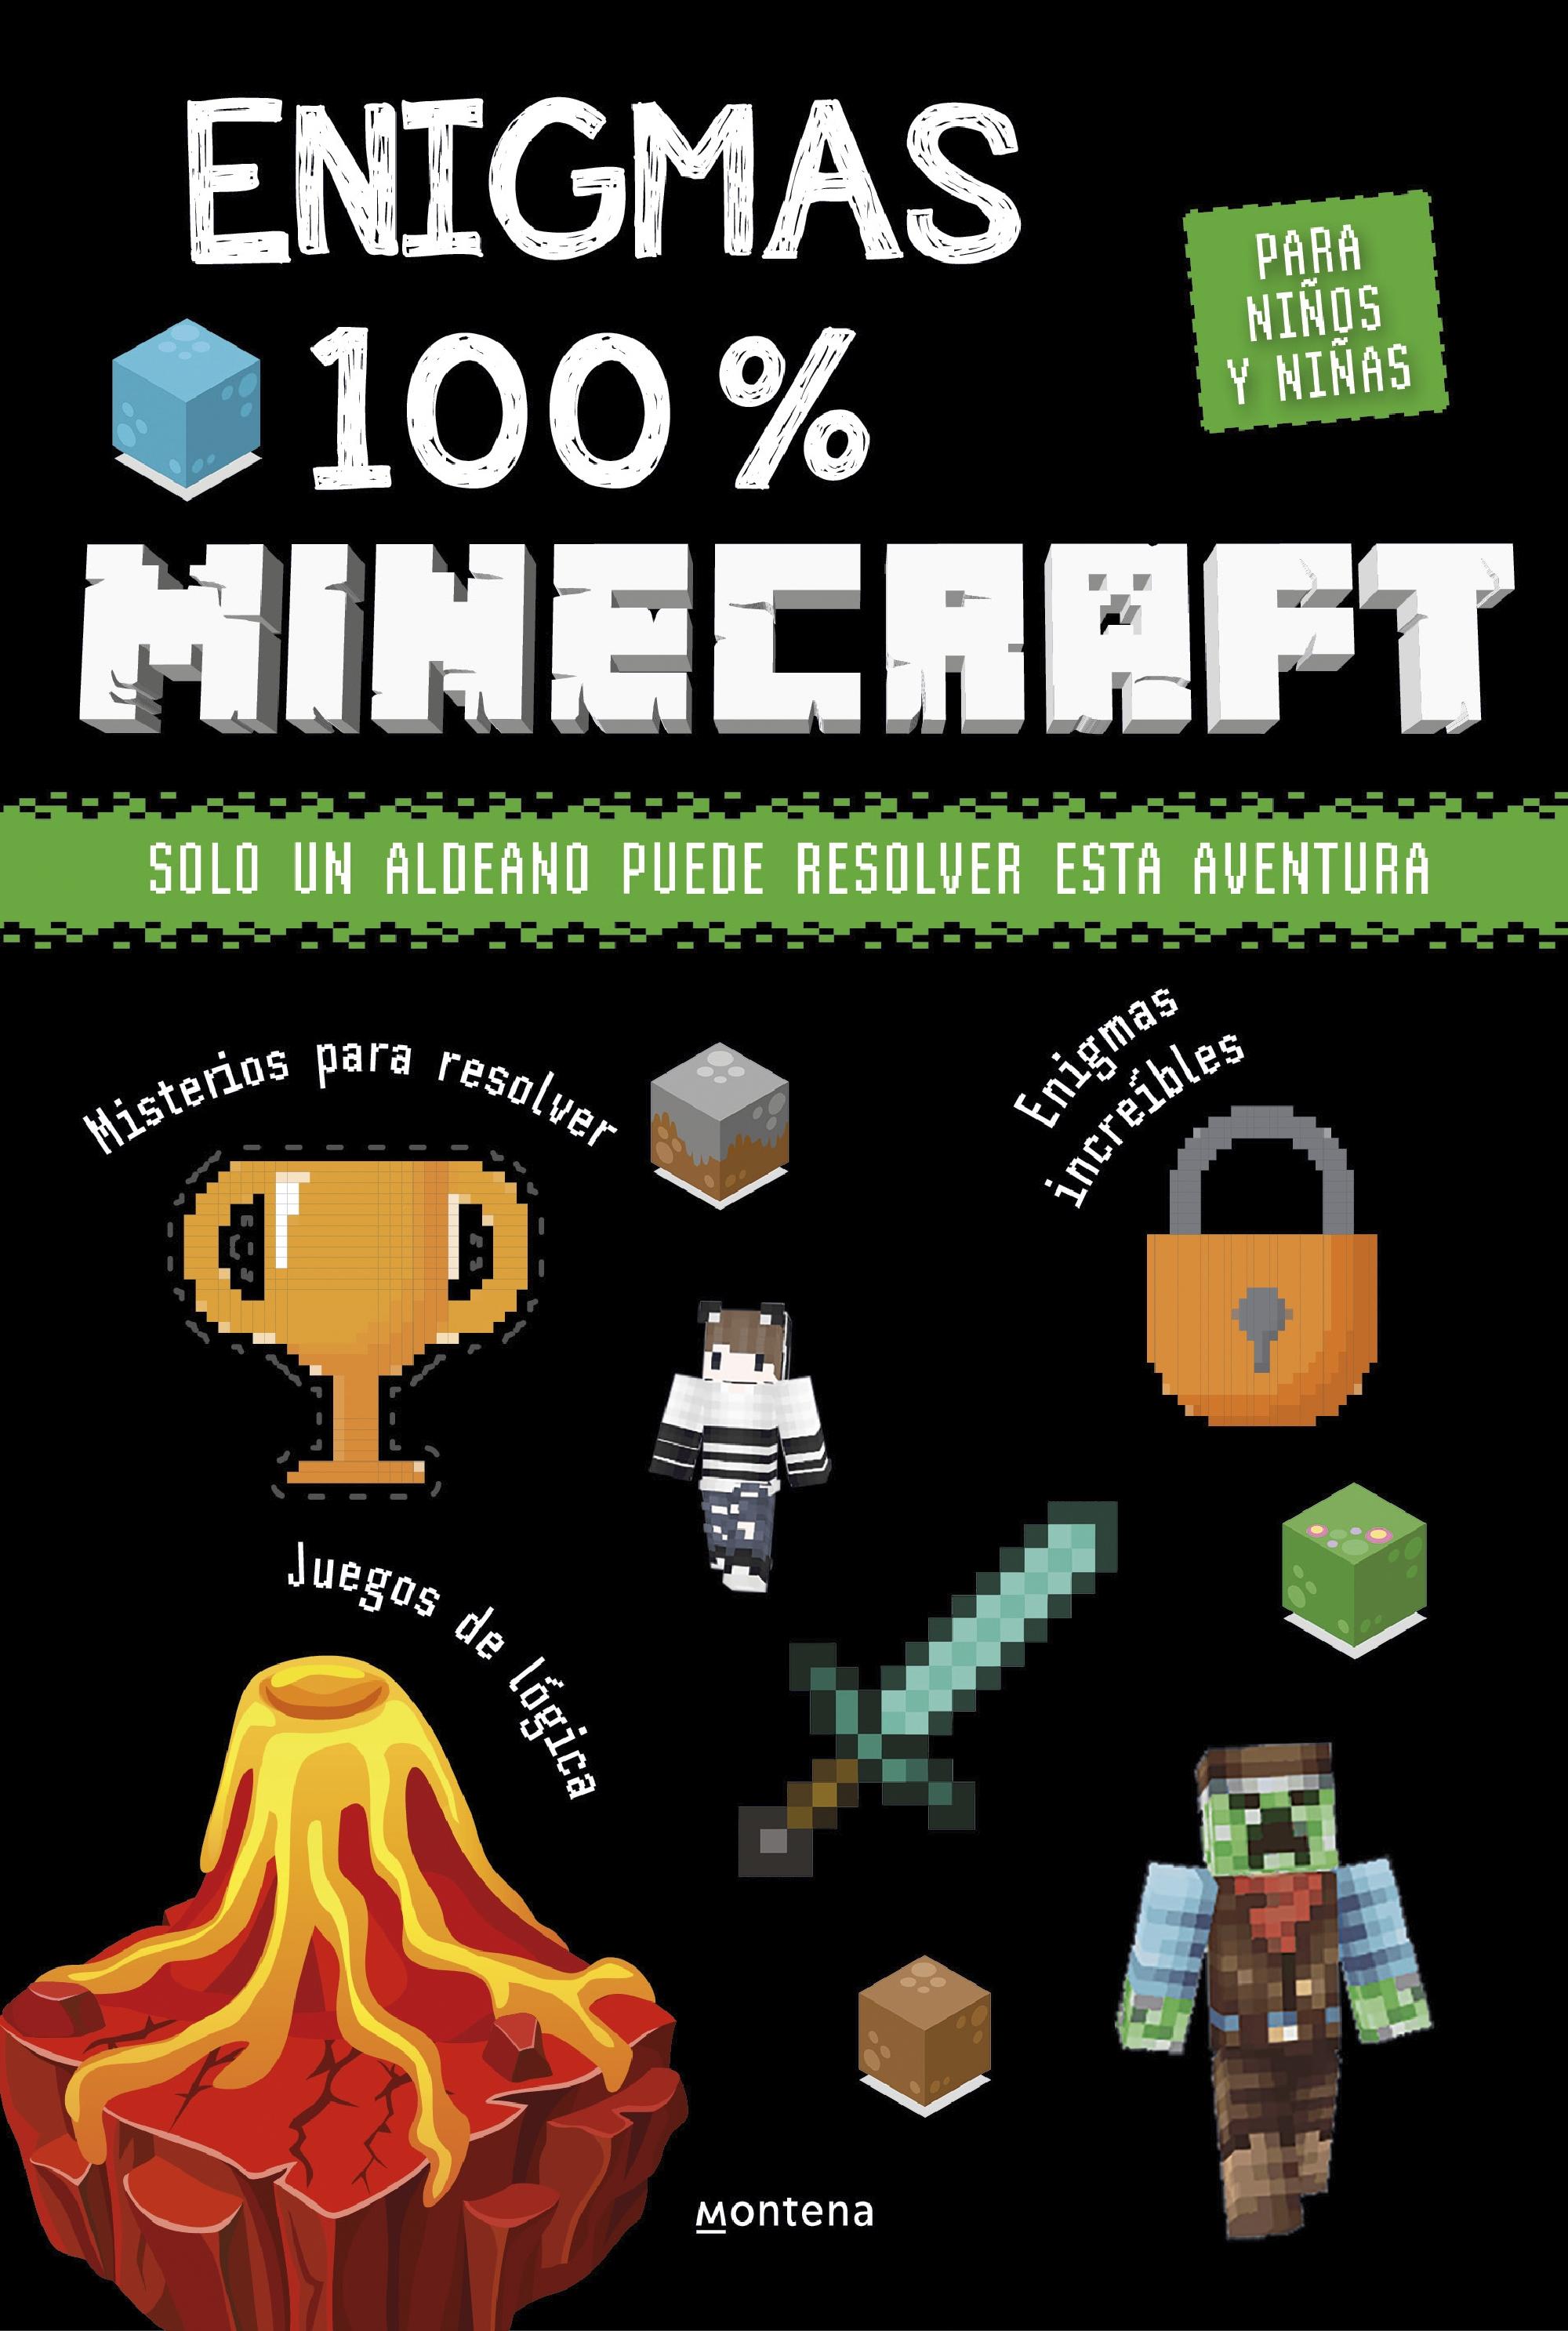 Enigmas 100% Minecraft  "Solo un Aldeano Puede Resolver Esta Aventura"